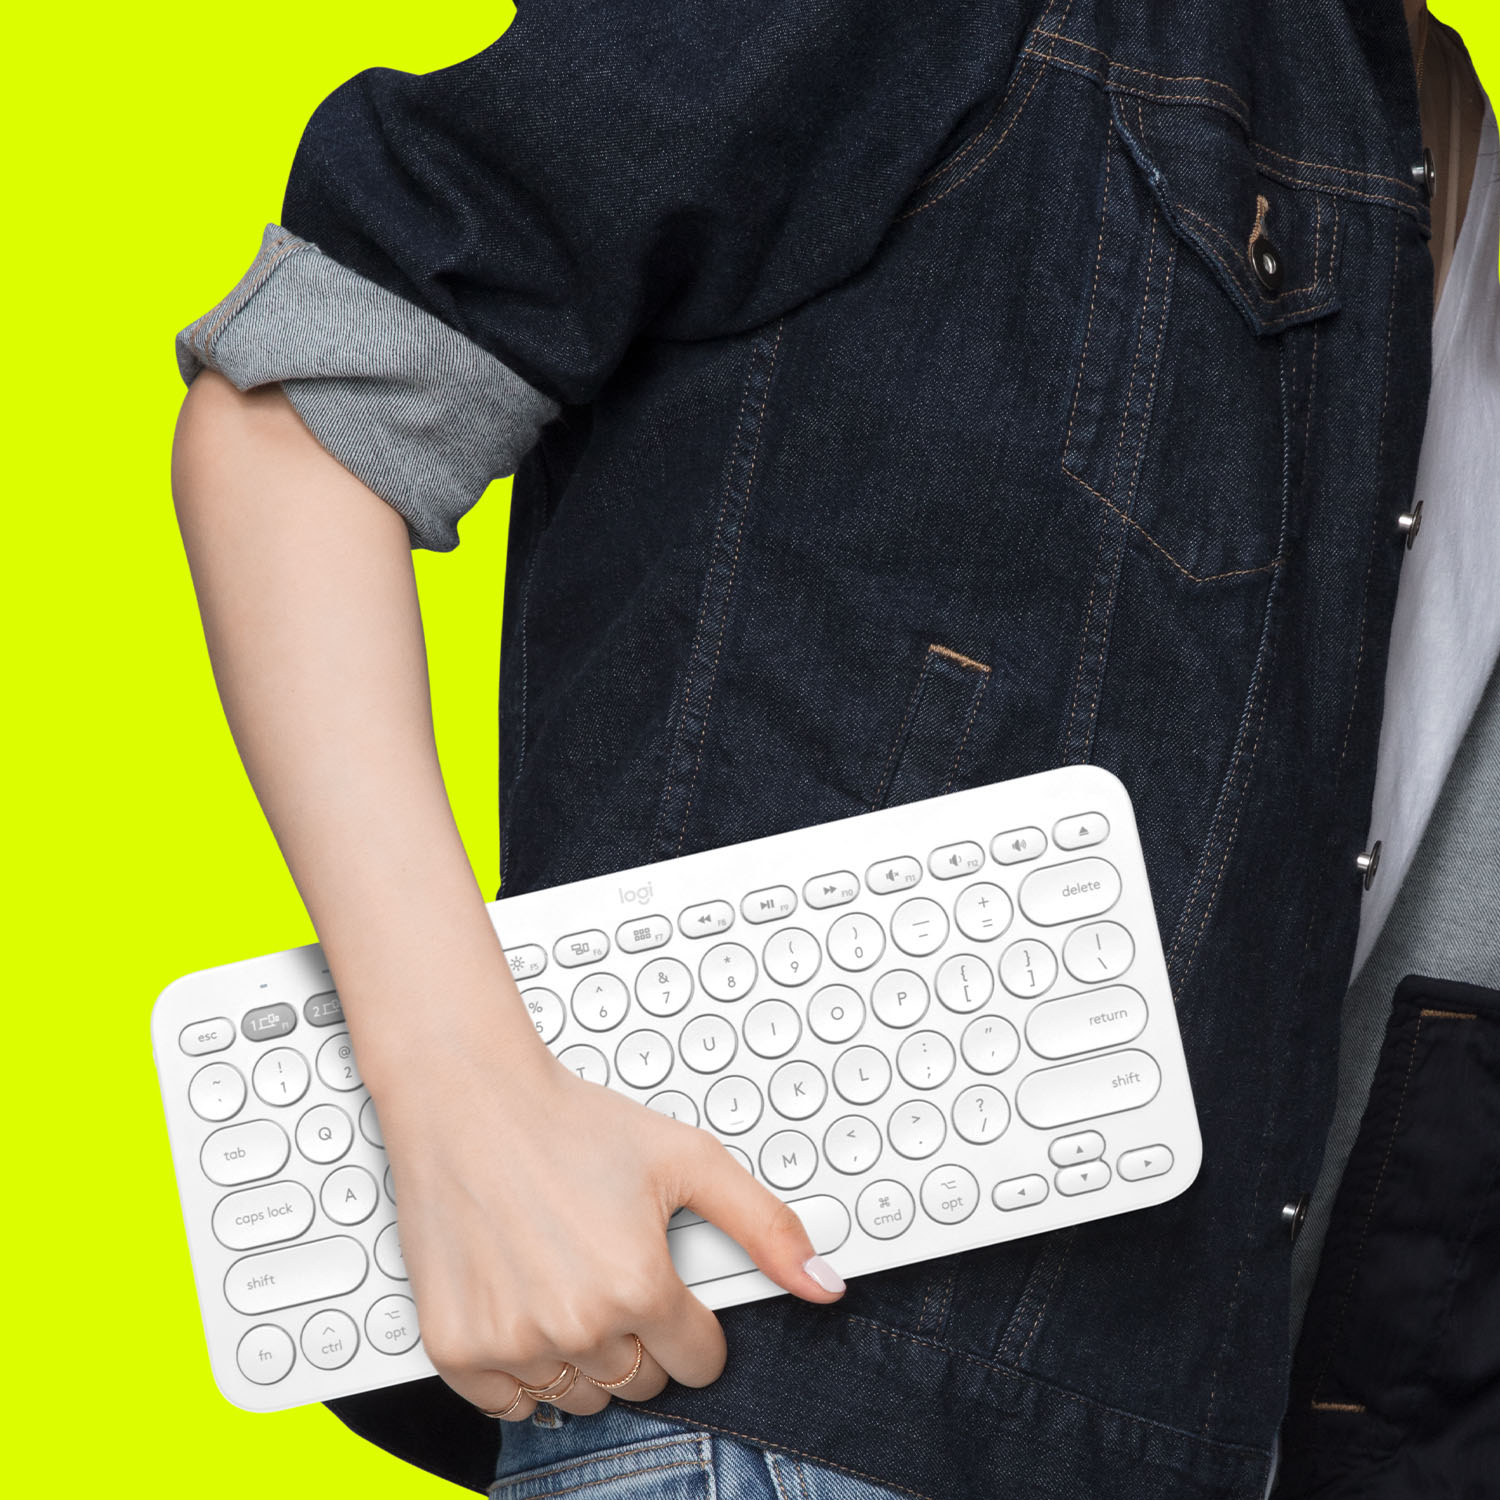 Logitech K380 Multi Device Bluetooth Scissor Keyboard For Mac Off White 9 Best Buy